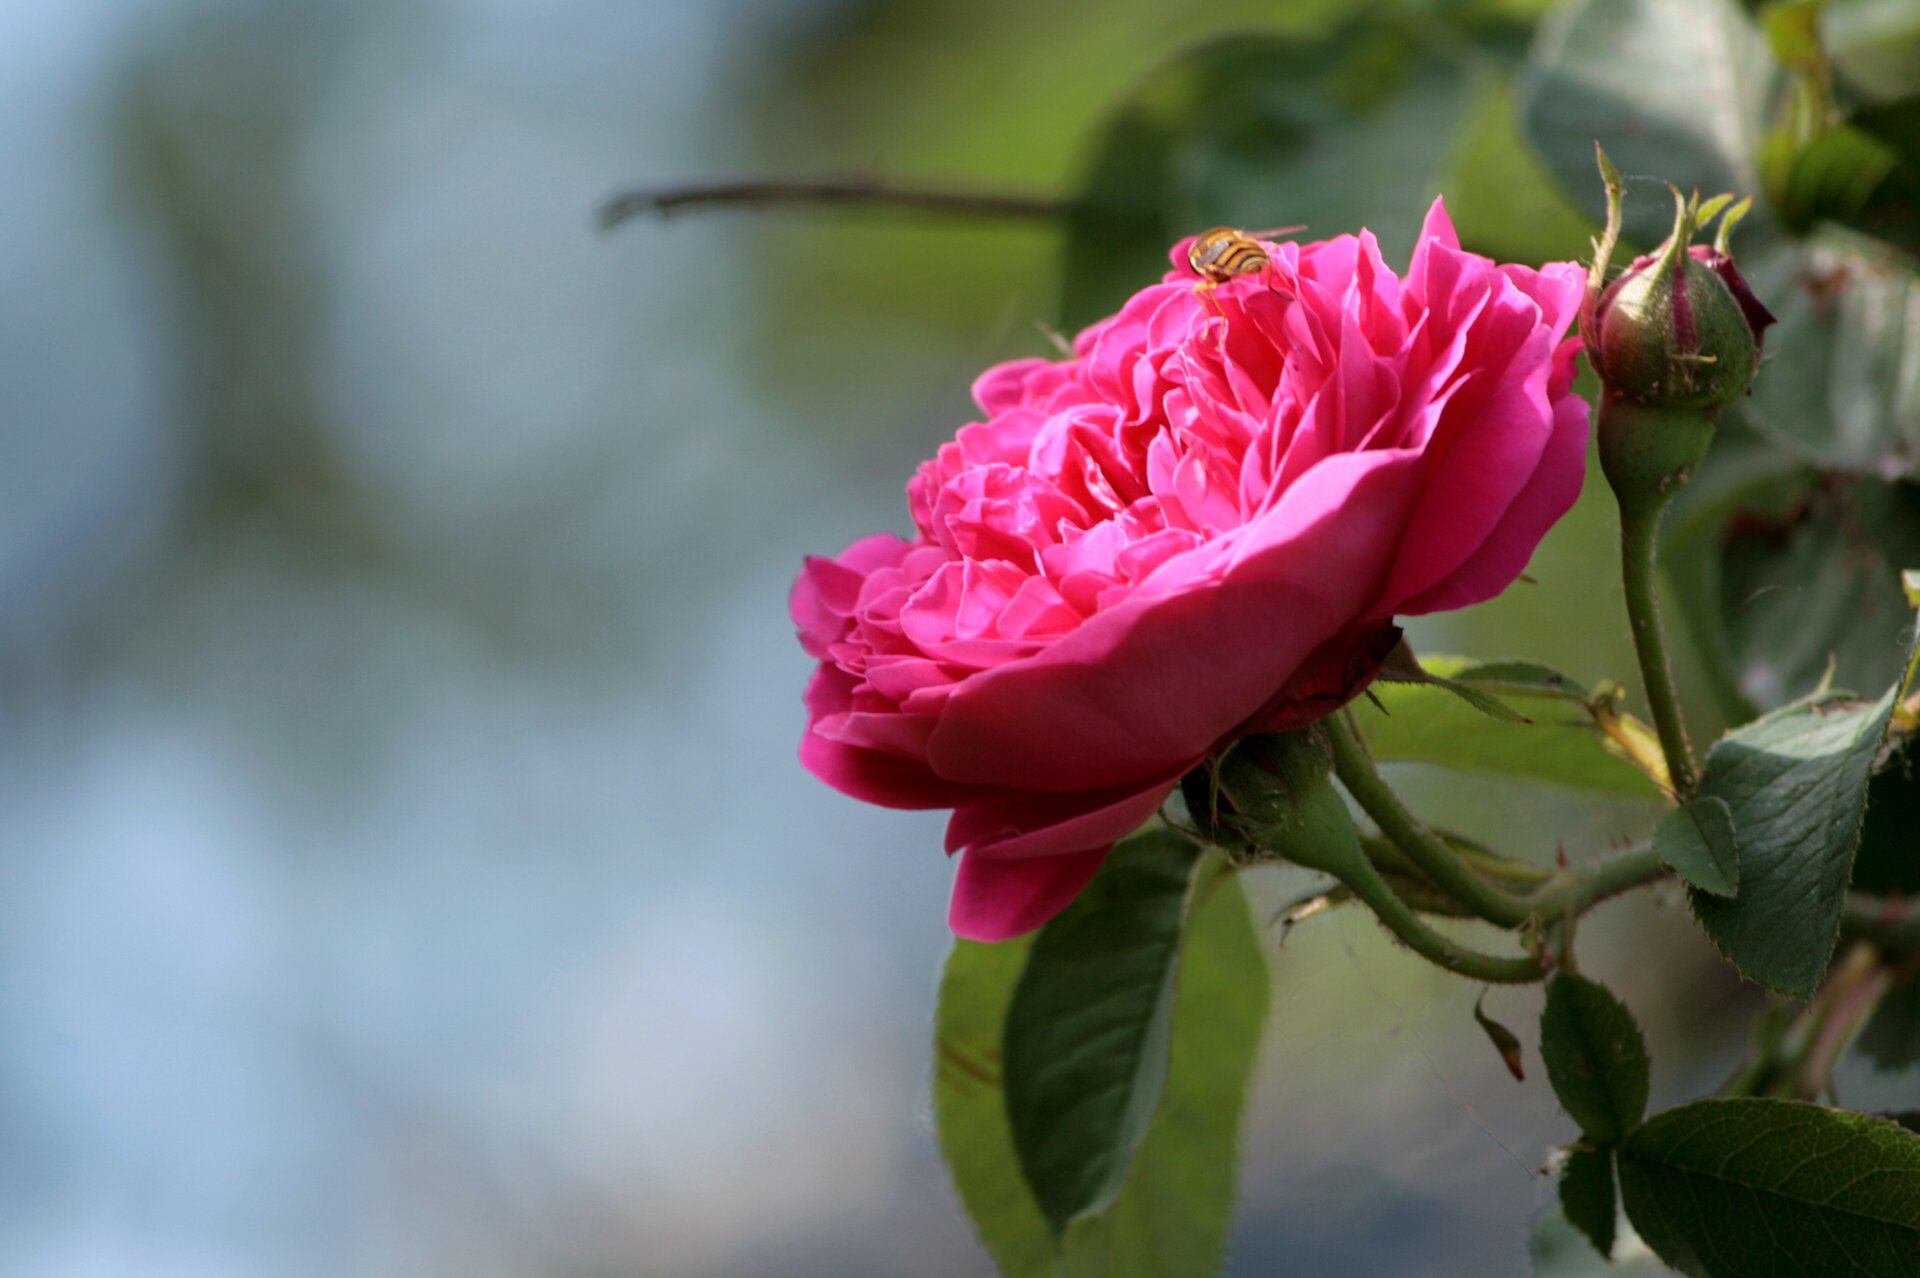 Kolorowa fotografia przedstawia rozwinięty różowy kwiat dzikiej róży, na którym siedzi pszczoła. Na tej samej łodyżce po prawej stronie jest nierozwinięty jeszcze pąk, poniżej i z tyłu - liście. Tło jest rozmyte.